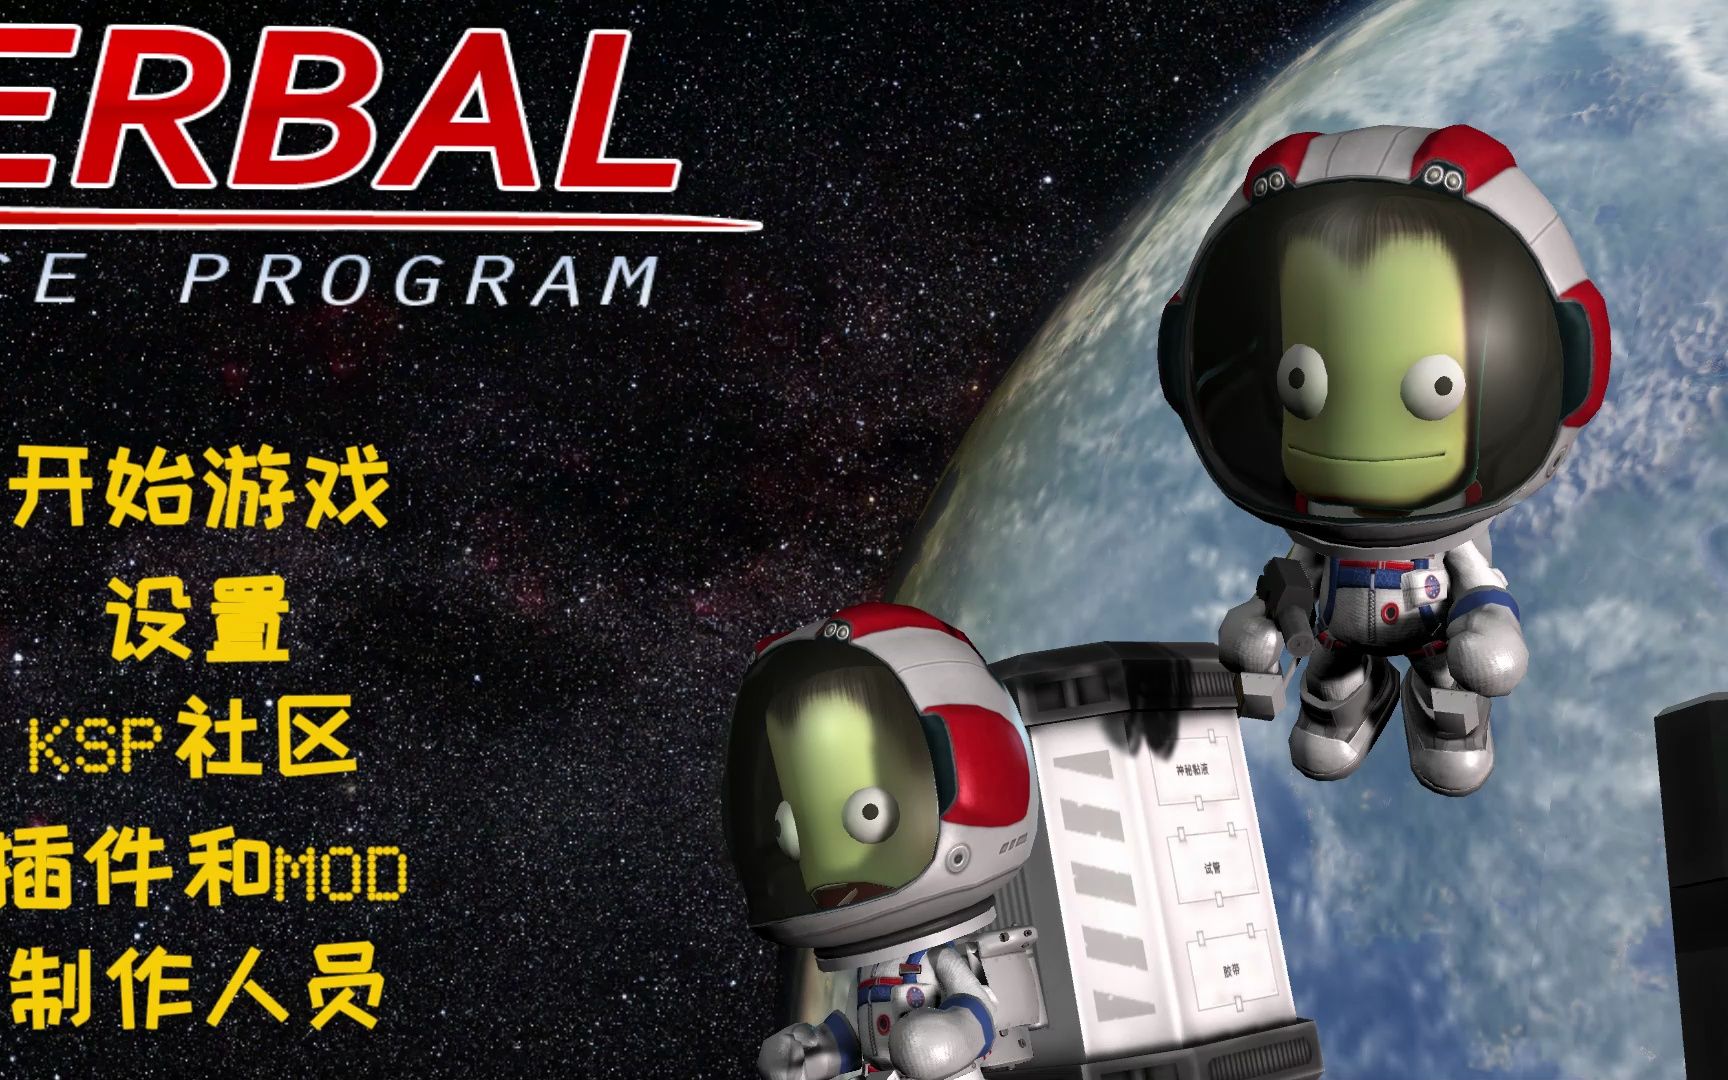 【坎巴拉太空计划】坎巴拉1号搭载小绿人前往空间站